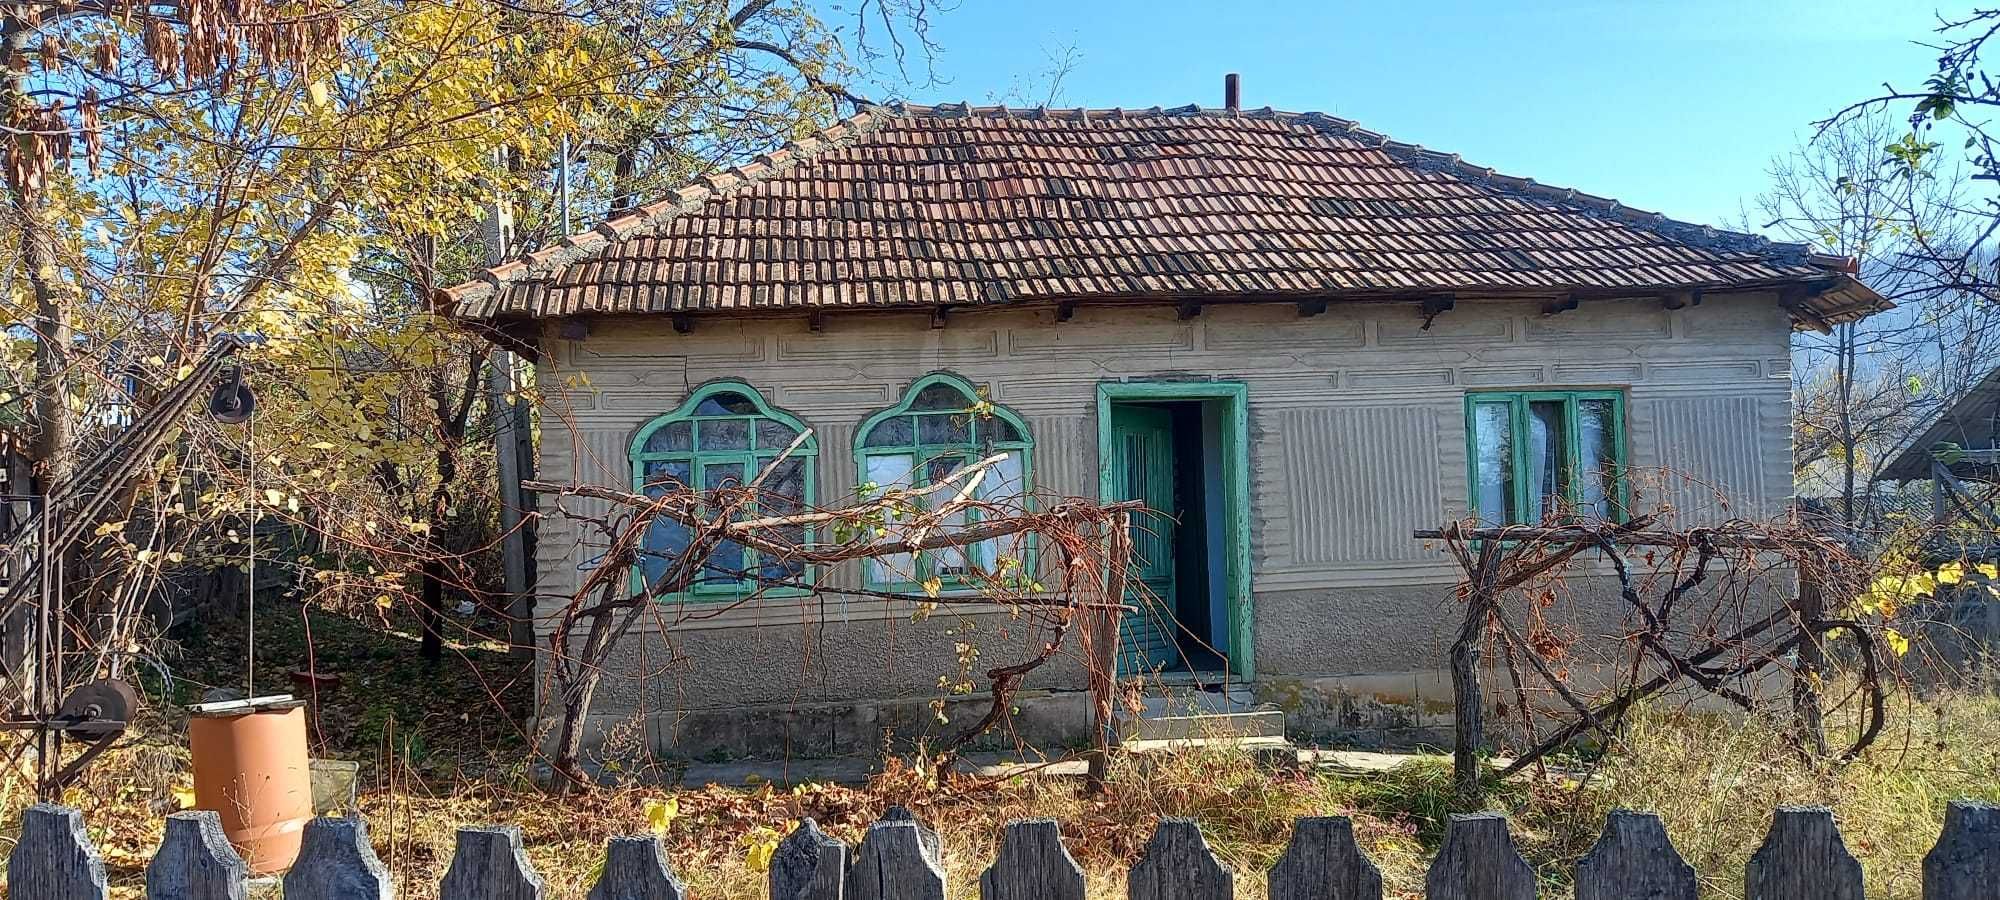 Casa de vânzare în sat Floresti com. Beceni, jud. Buzău